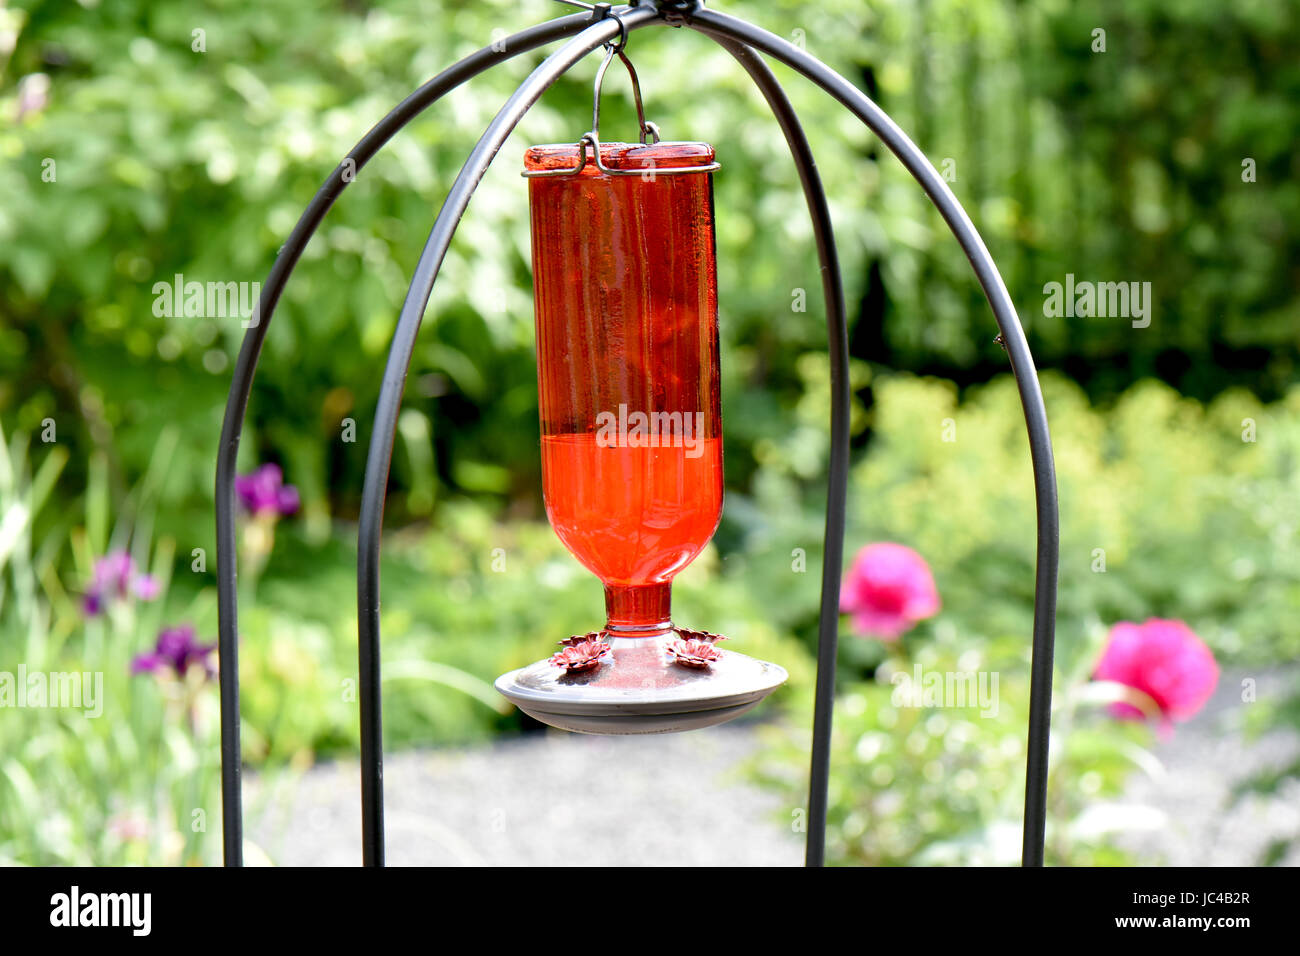 Brillante alimentatore cremisi riempito con acqua zuccherata lures colibrì in un giardino. Foto Stock